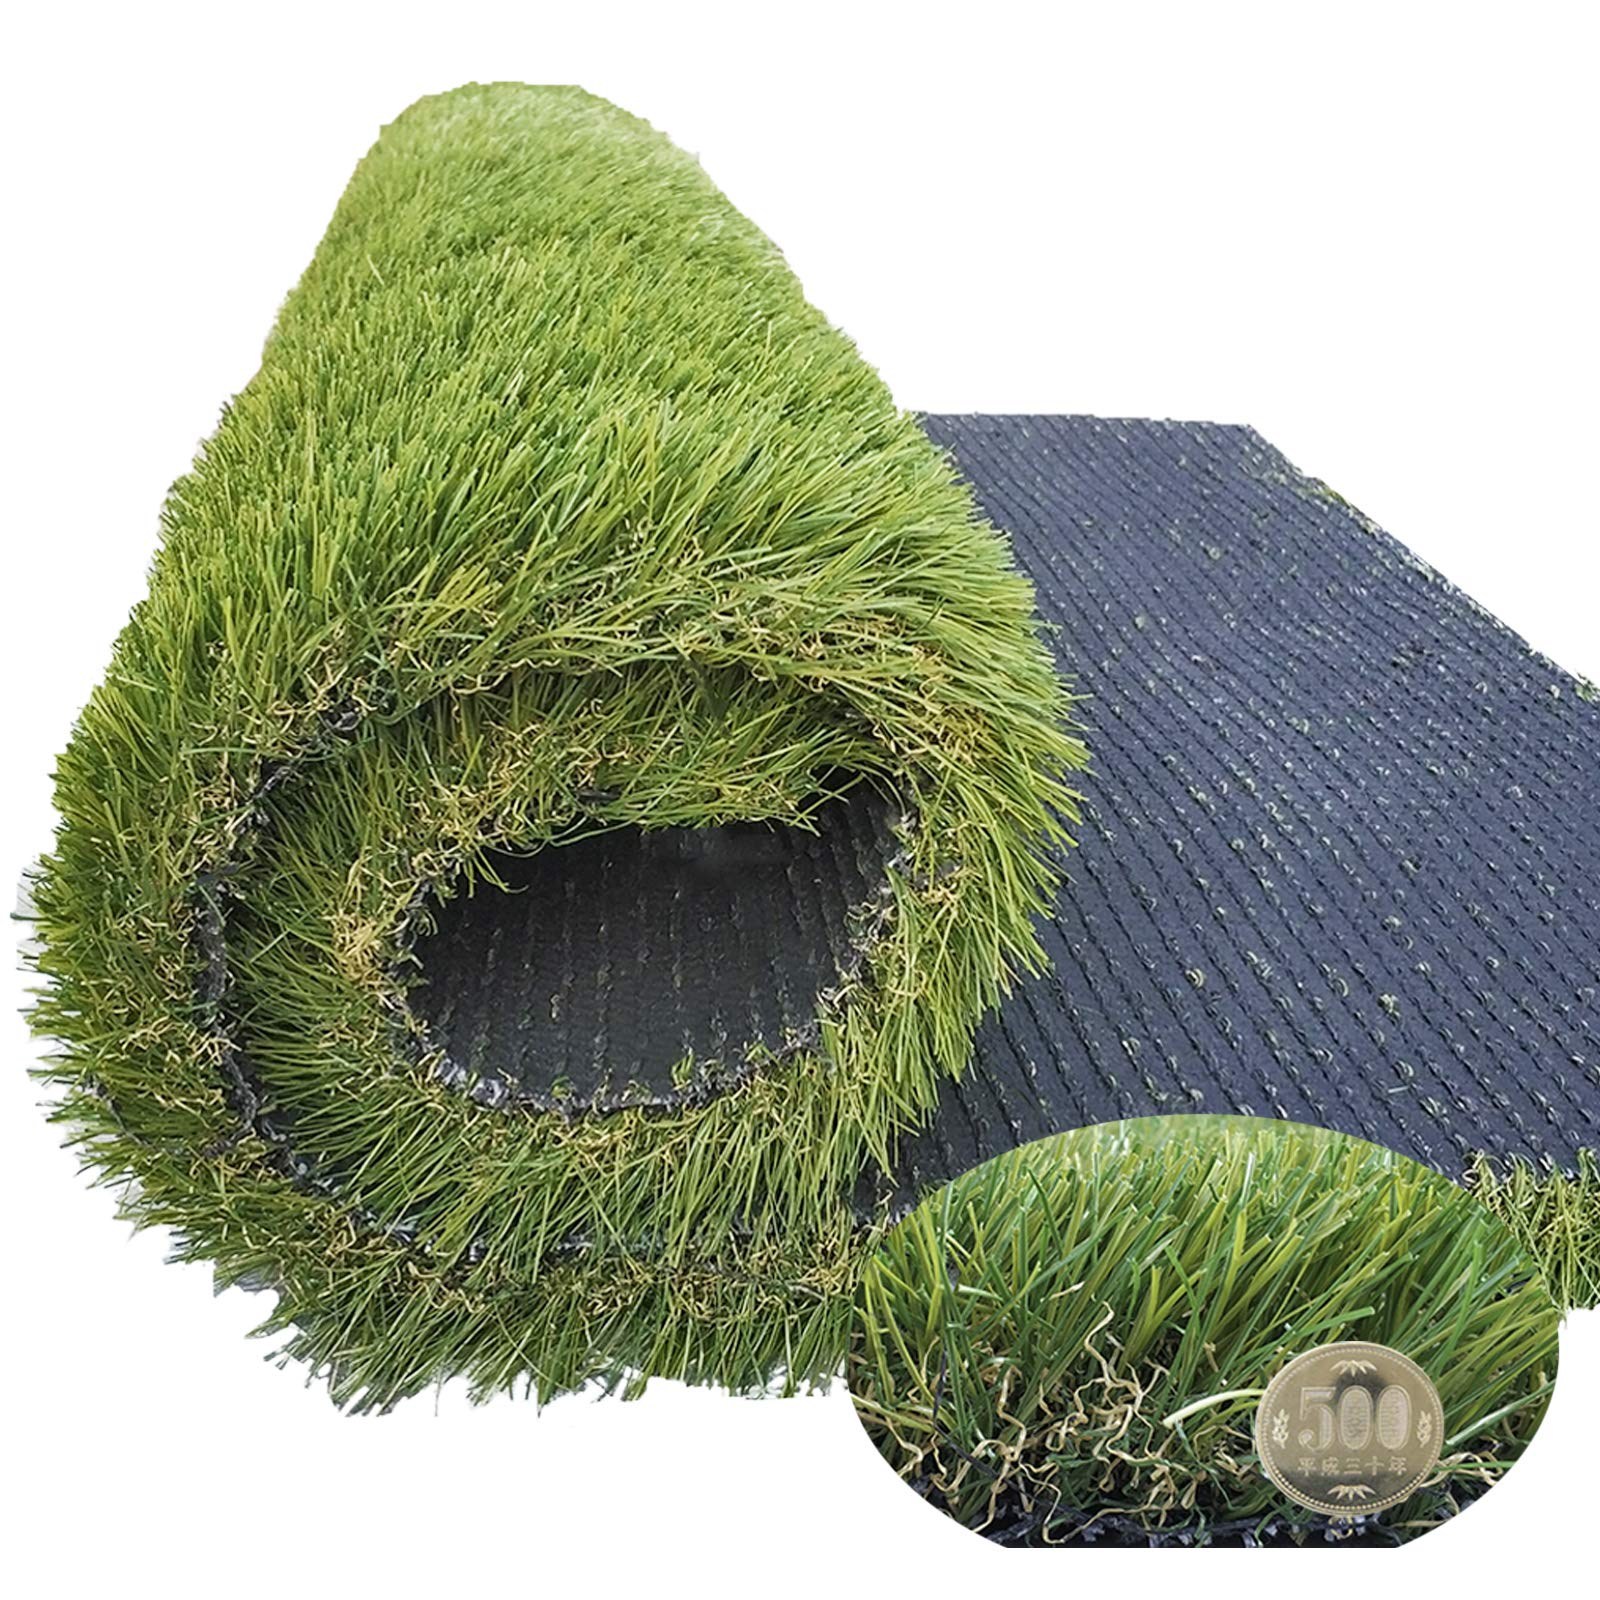 人工芝 芝生マット ベランダ ガーデン ペット用 芝丈45mm SGS認証 密度2倍 高耐久4層構造 リアル 天然芝質感の3種MIX葉 防草 水はけ可 0.4m 0.8m